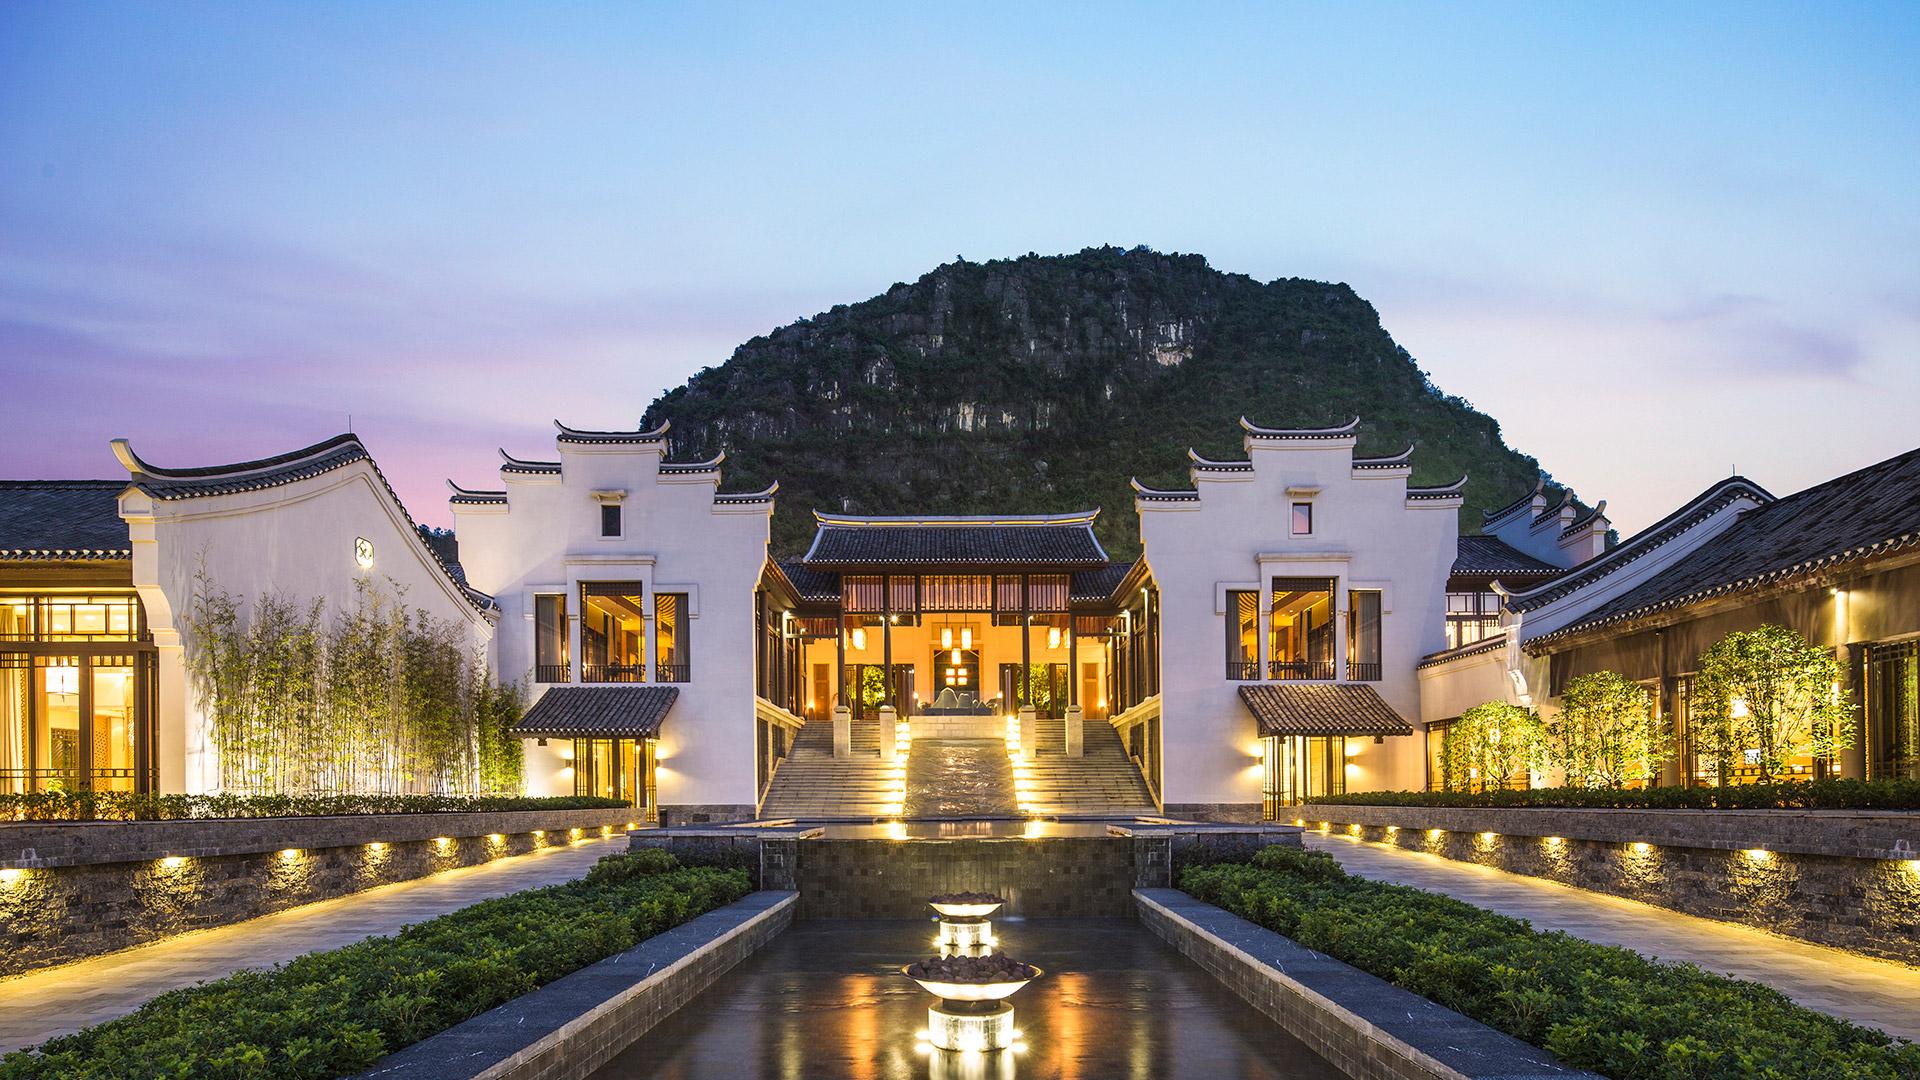 Guilin Mountain Resort & Hotel in Yangshuo Banyan Tree